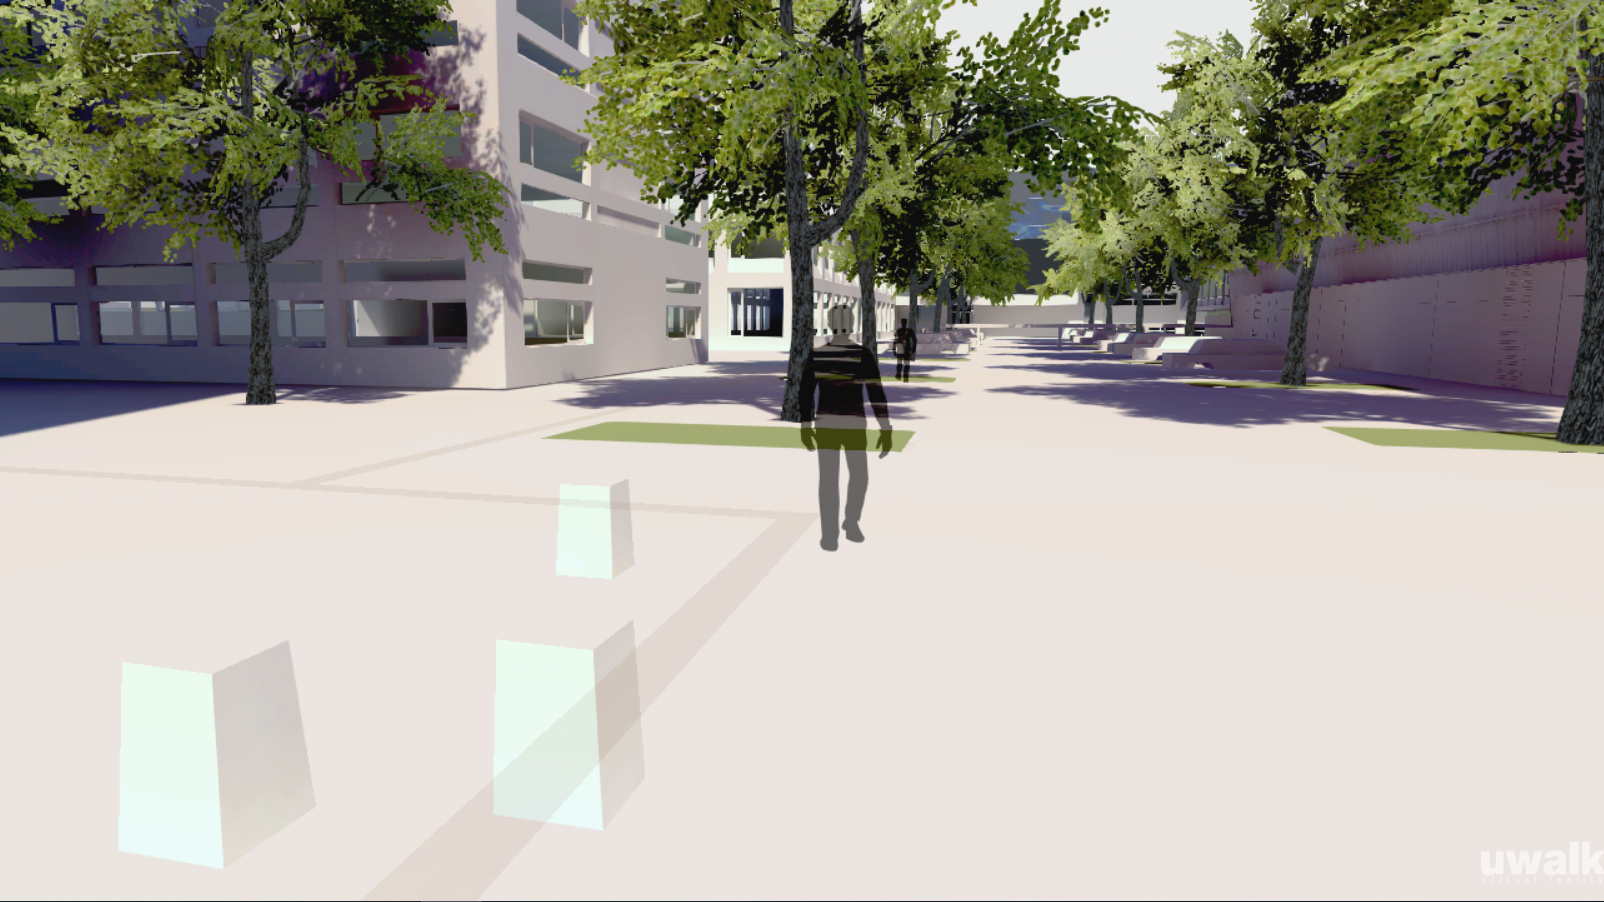 Zusammen mit den virtuellen Bewohnern lässt sich schon jetzt die Smart-City Waagner-Biro erleben -Quelle: uwalkin